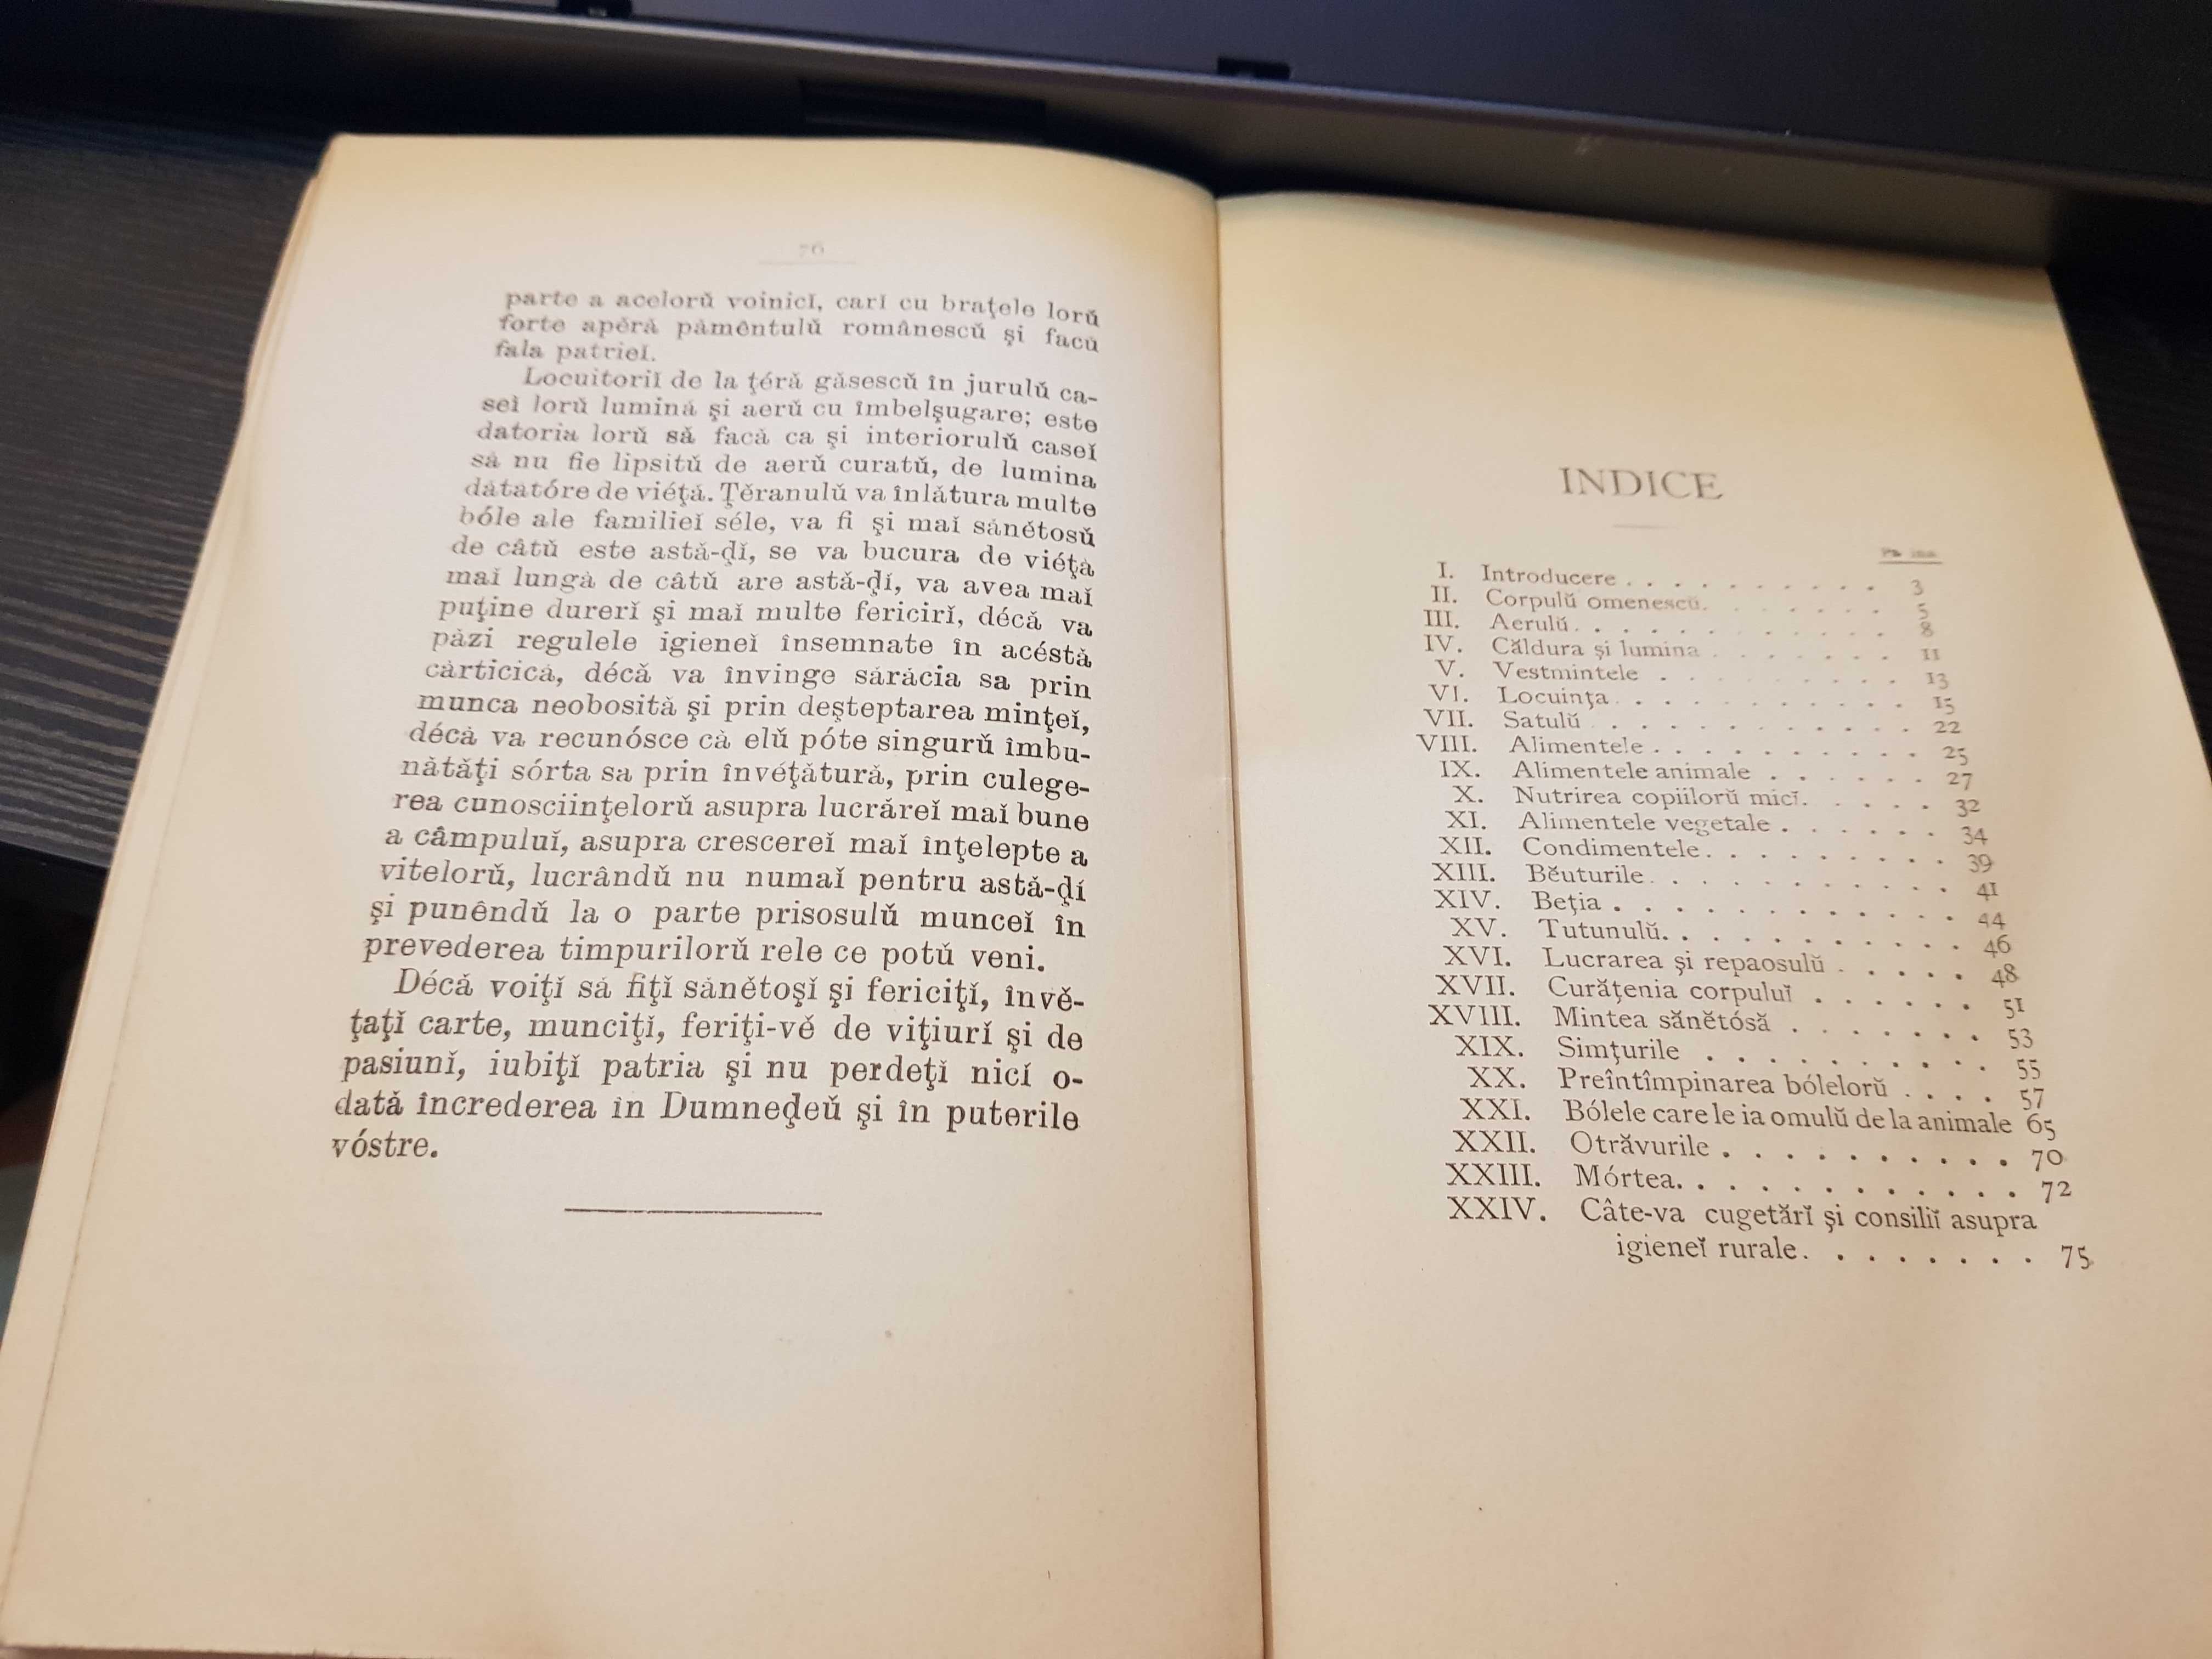 Manual Elementar de Igiena I. Felix 1885